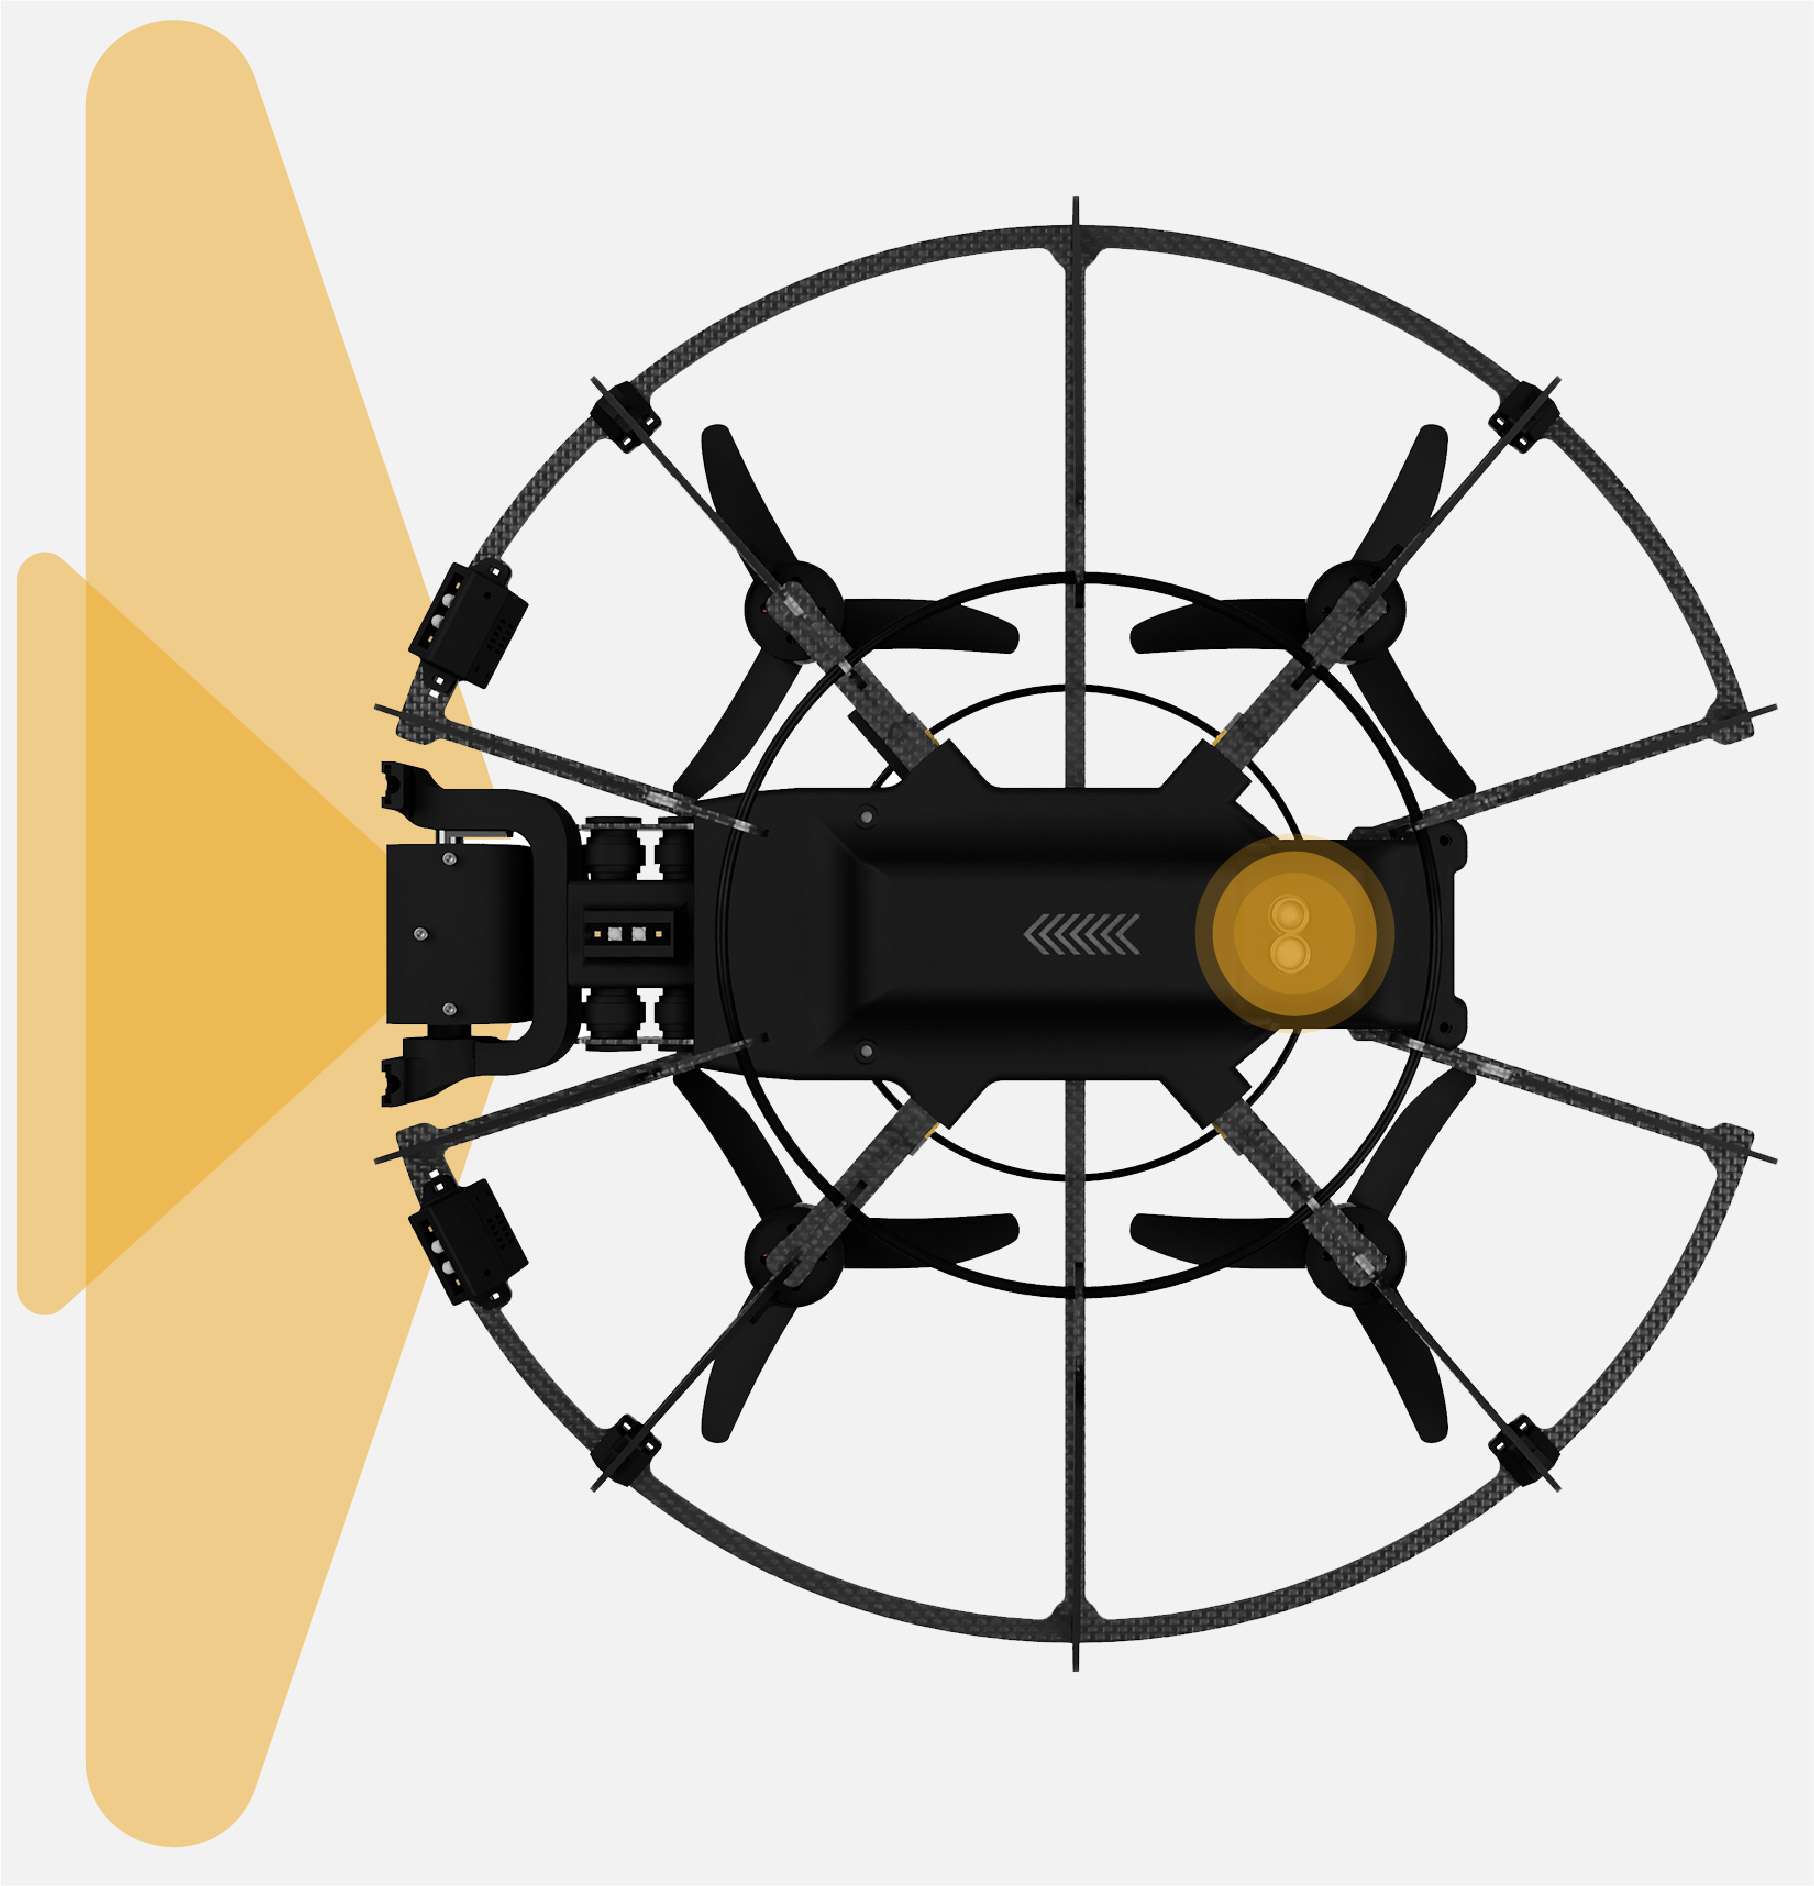 Inspektionen in unerreichbaren Einsatzgebieten. Mit INSPEC 2 fliegen Sie dort, wo andere Drohnen aufgeben. Durch intelligente Sensorik positioniert sich die Drohne ohne GPS und navigiert in komplexen Innenbereichen. Konzentrieren Sie sich auf Ihren Einsatz und profitieren Sie von kostensparenden und schnellen Inspektionen.